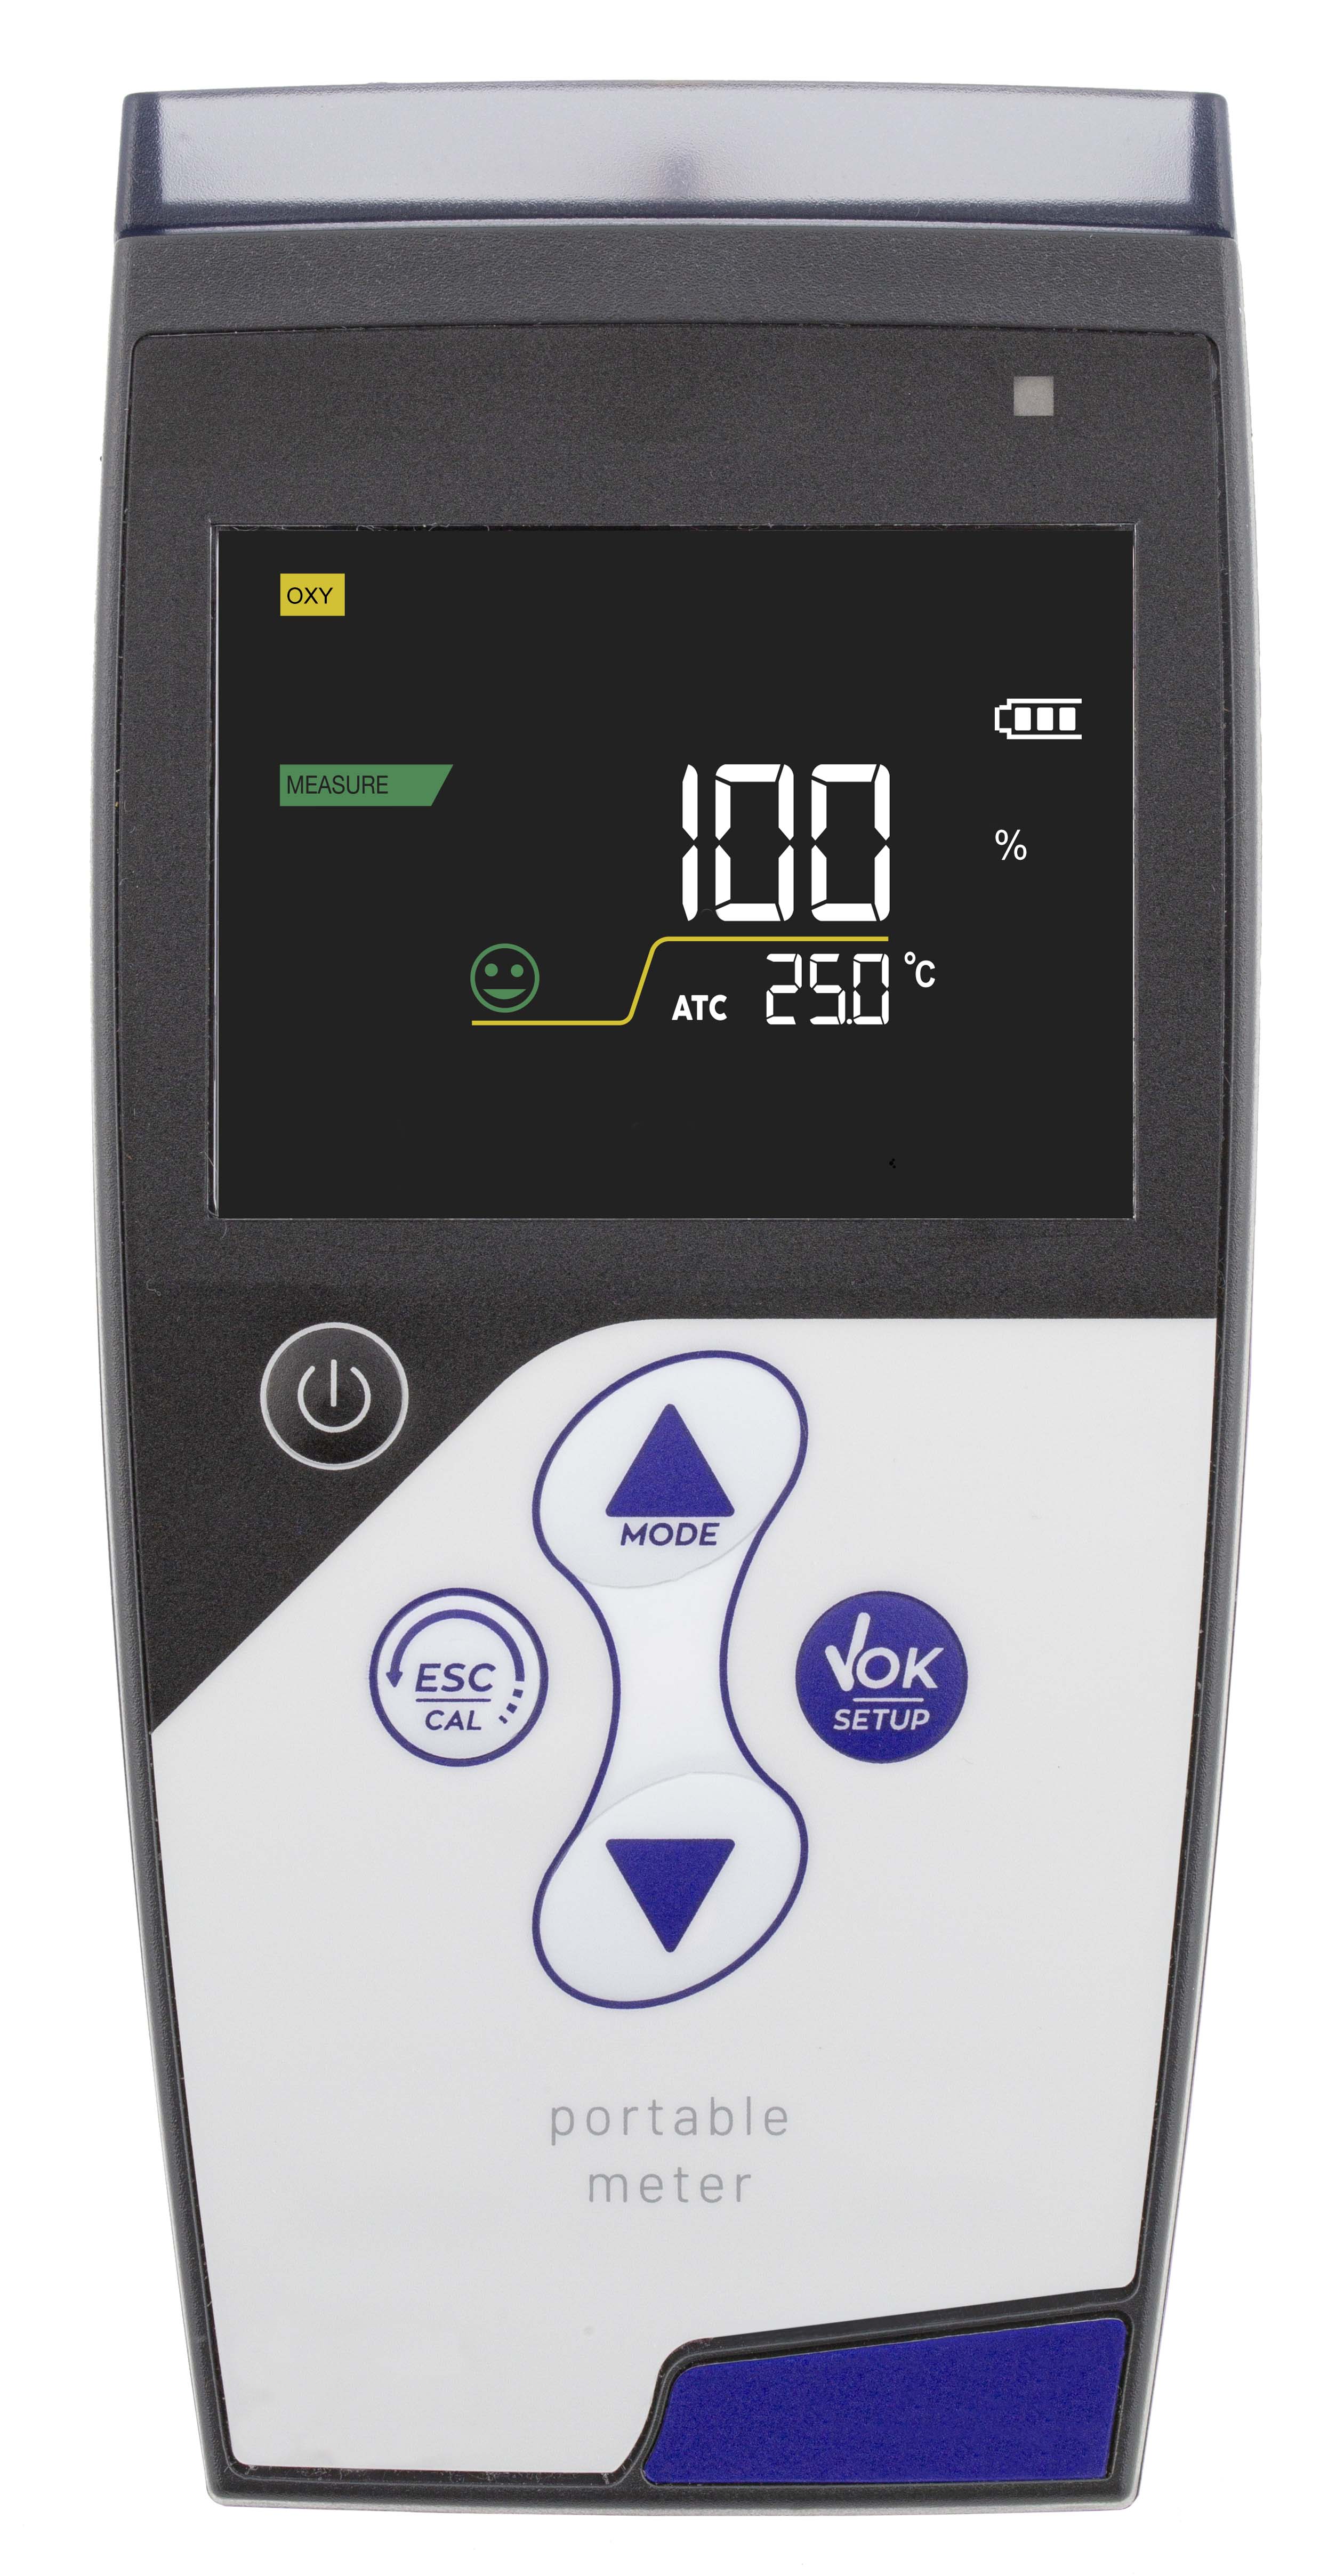 XS Oxy 7 gelöster Sauerstoff/O2 Sättigung/barometrischer Druck/Temperatur Messgerät im Koffer inklusive polarographischen DO7 Sauerstoffsensor